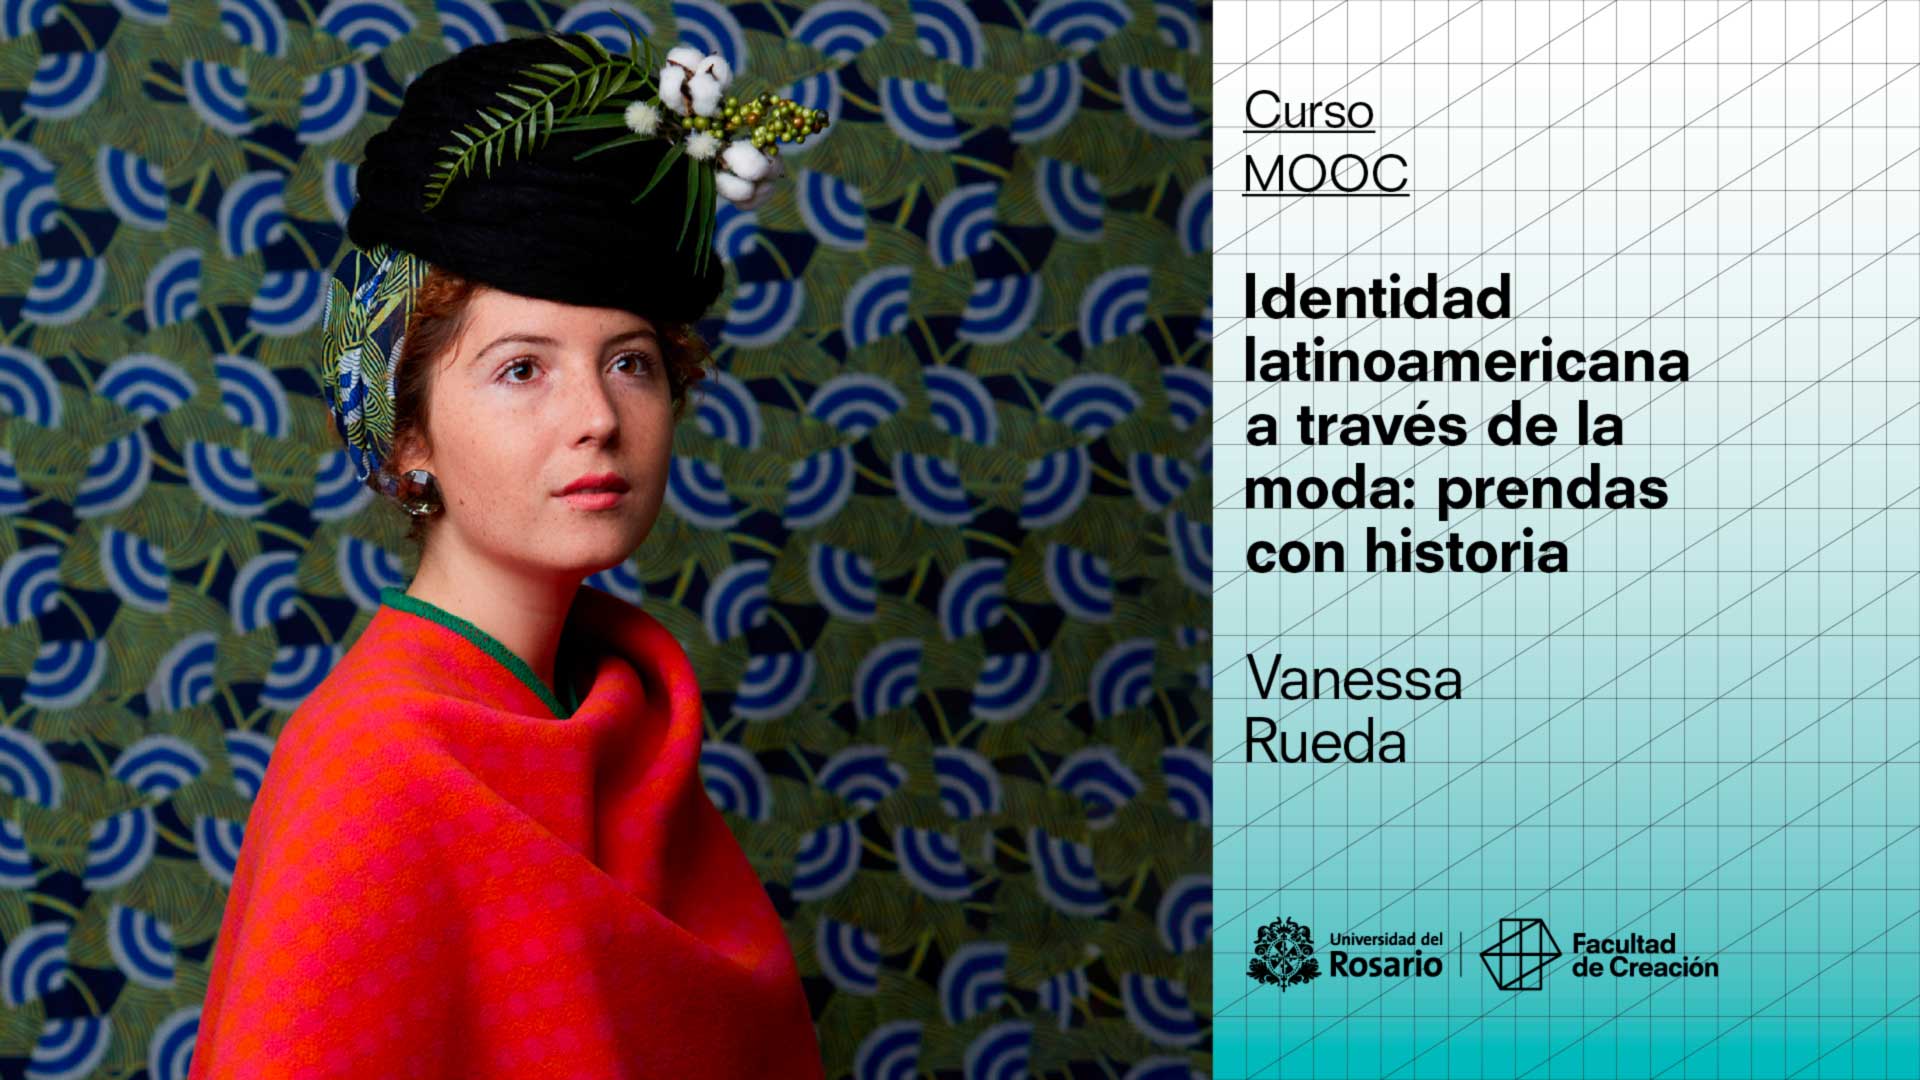 Identidad latinoamericana a través de la moda: prendas con historia